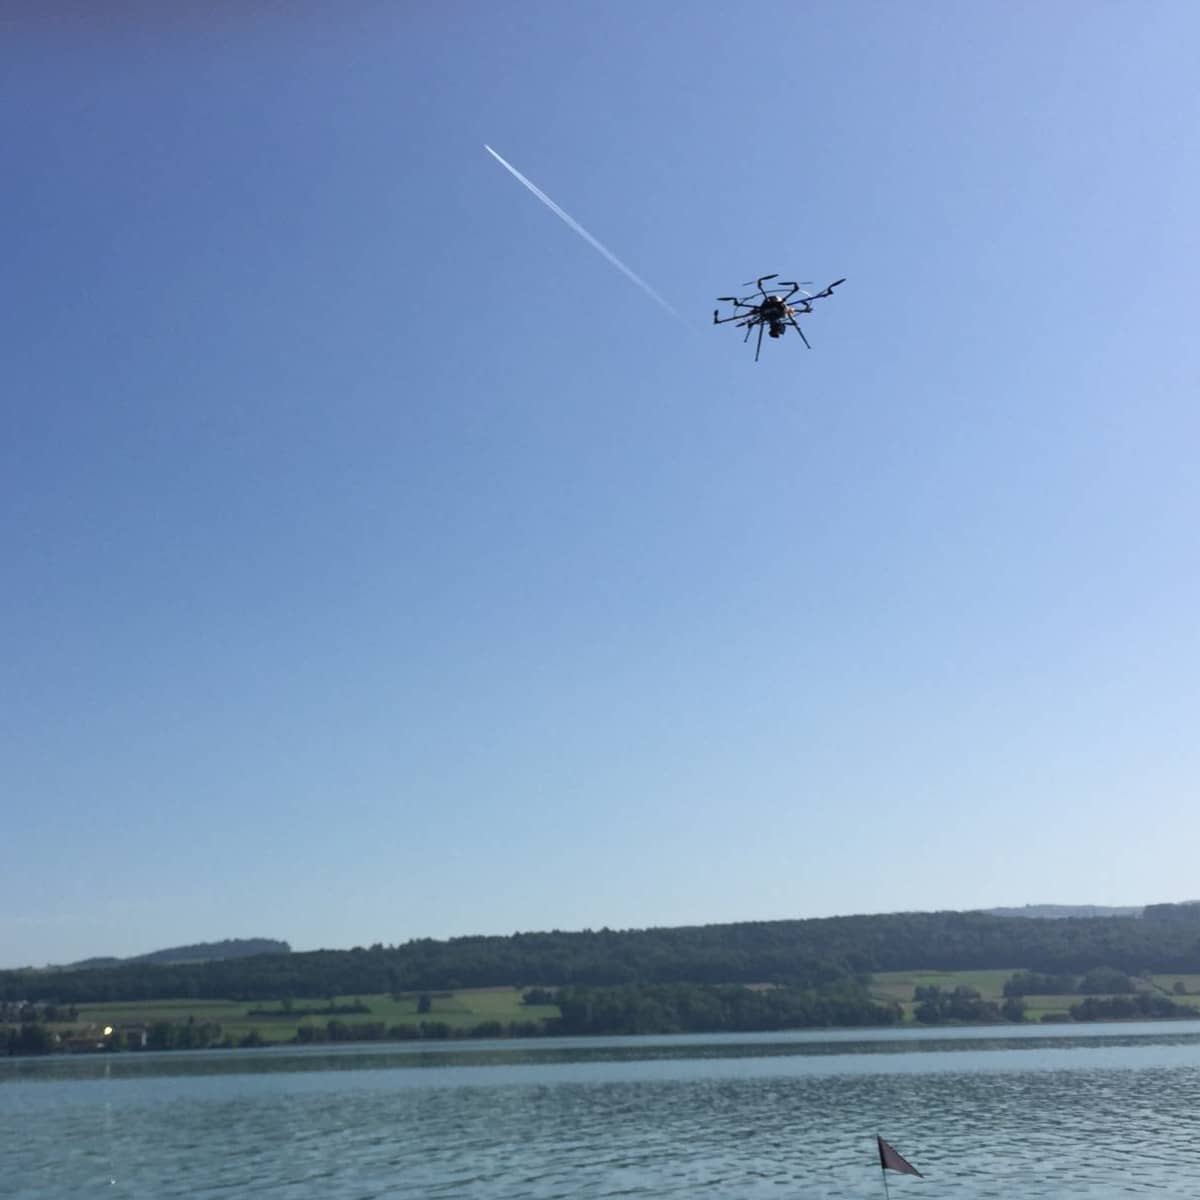 Drohne fliegt über Taucher im Wasser.